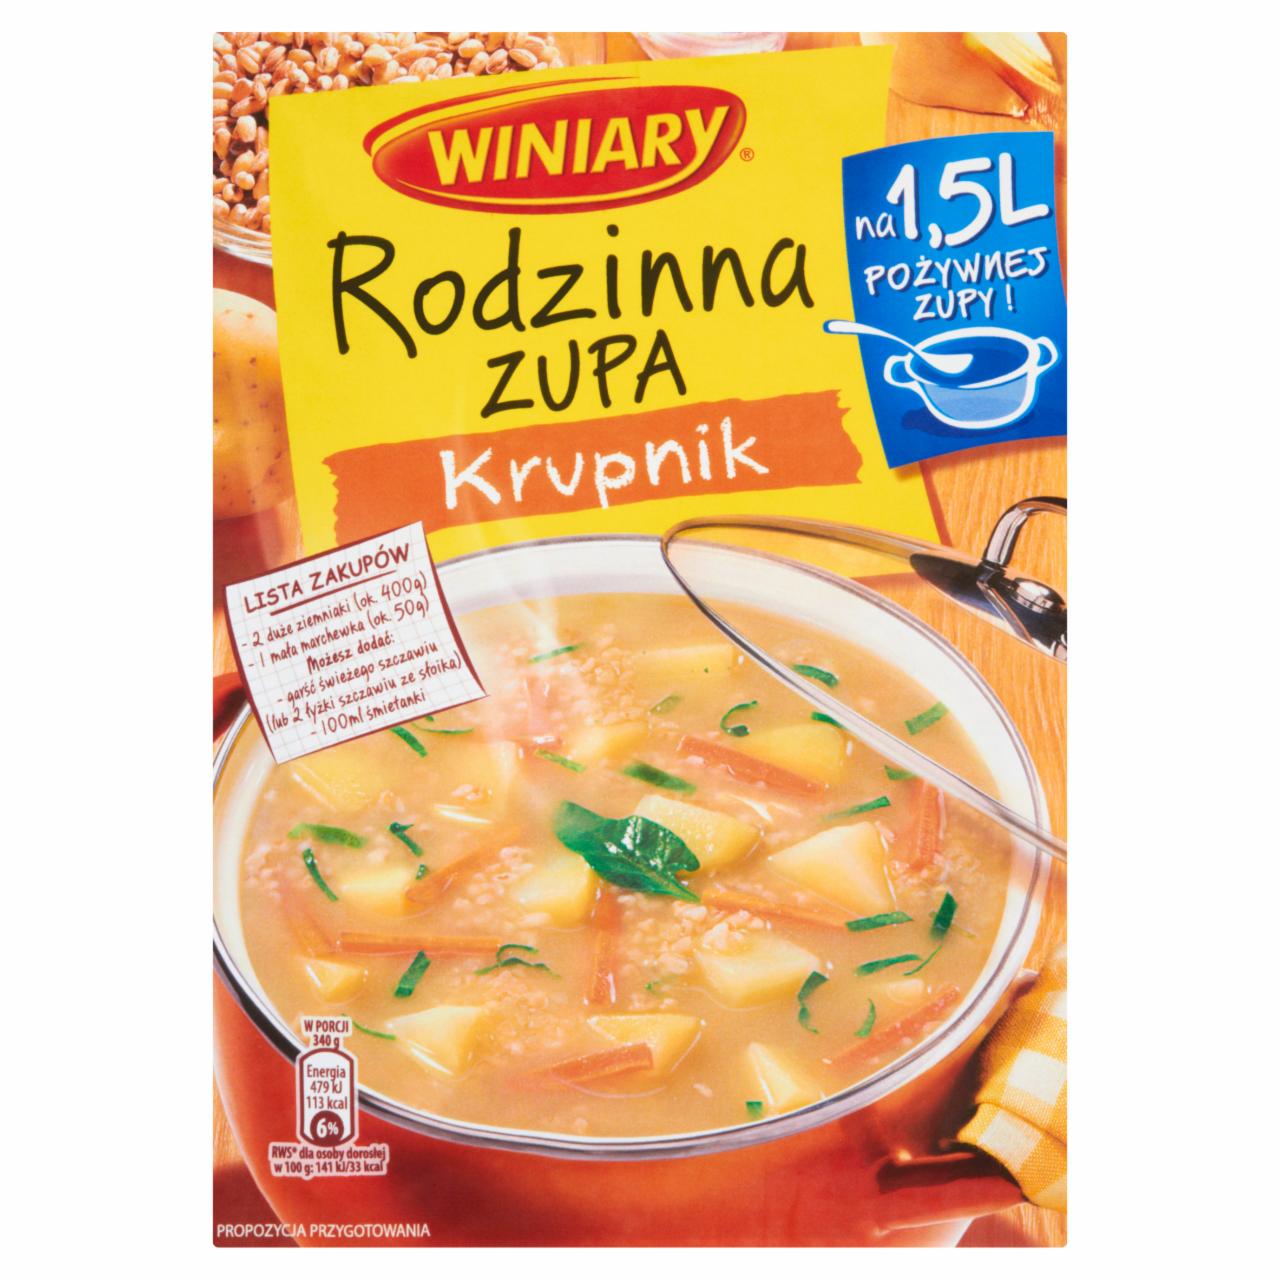 Zdjęcia - Winiary Rodzinna zupa Krupnik 88 g